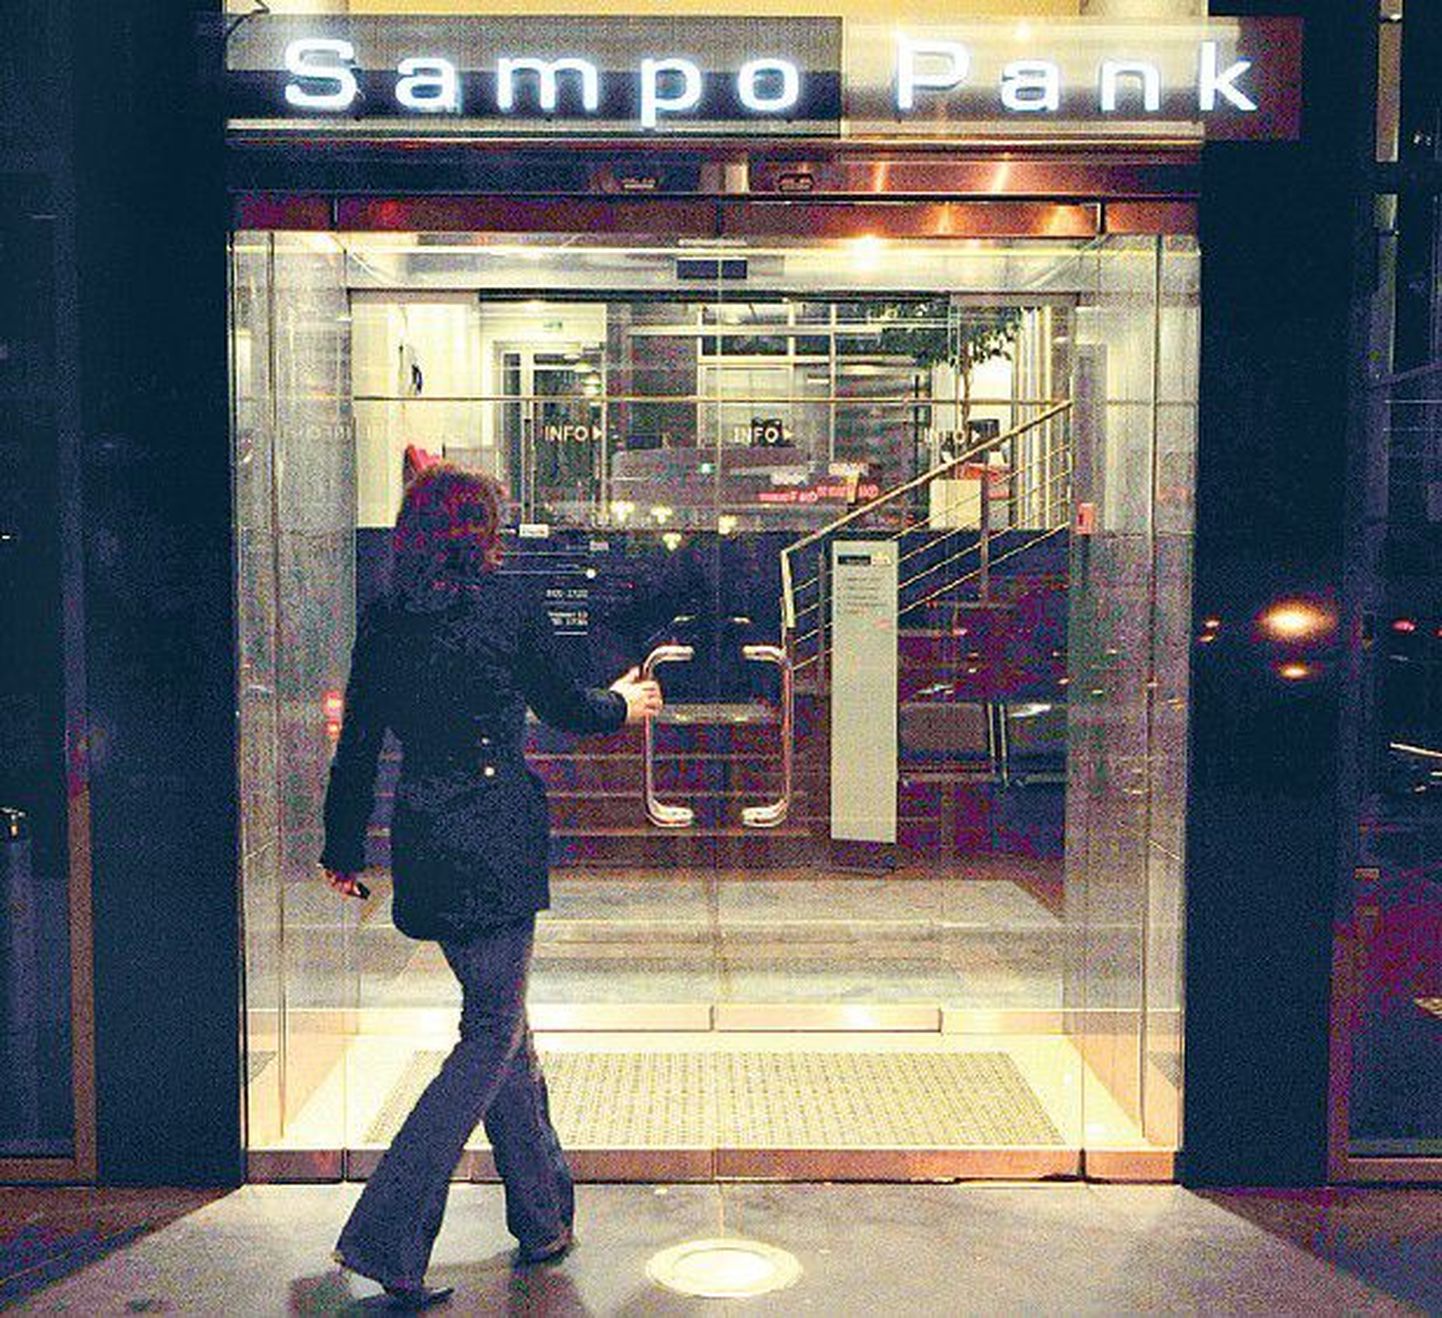 Sampo Pank on viimastel aastatel jõuliselt teiste pankade kliente enda juurde meelitanud, lubades soodsamaid intresse ja teenustasusid.